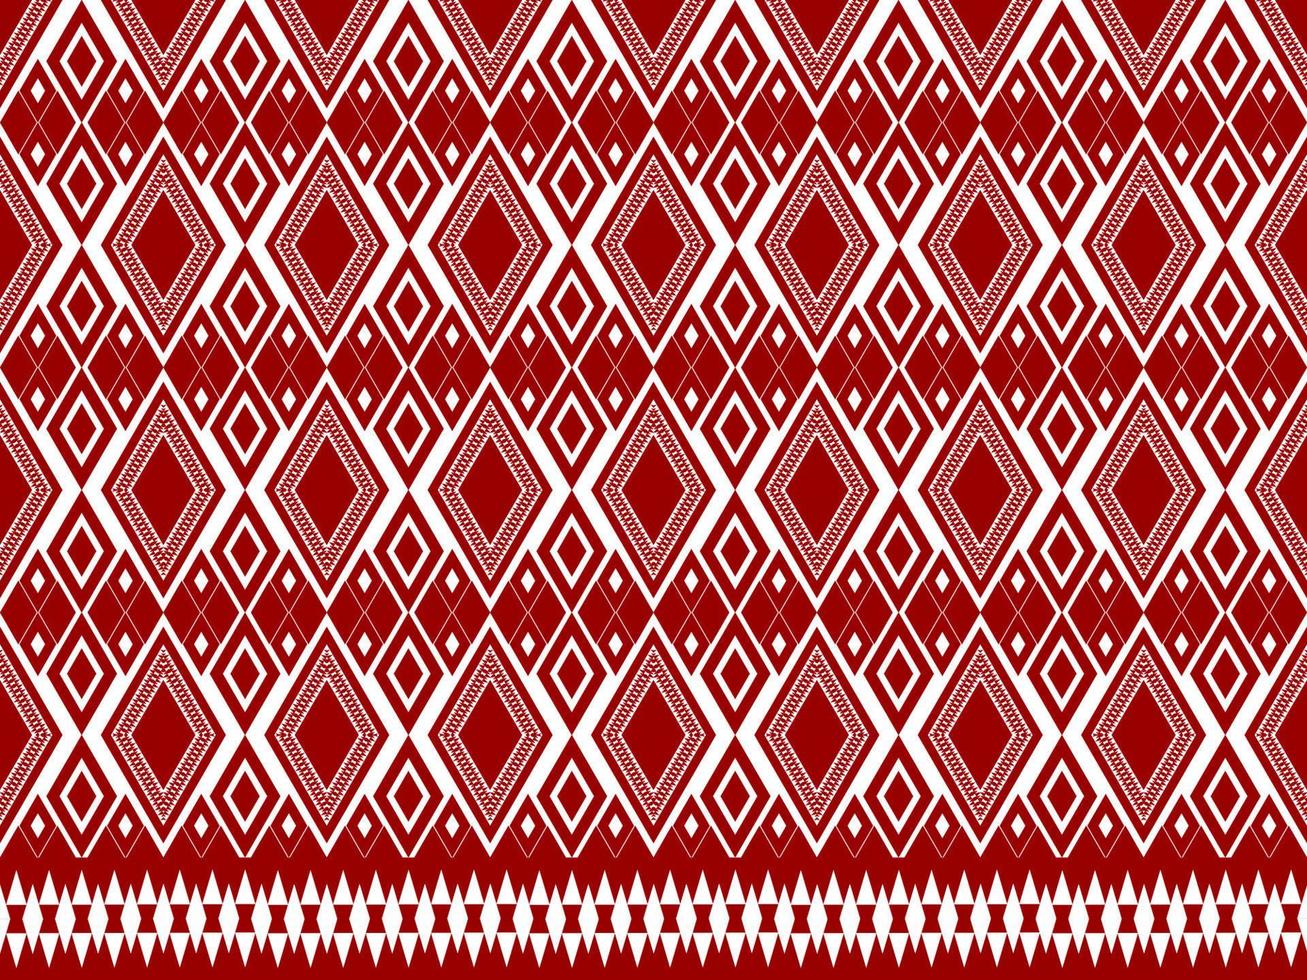 motif de tissu géométrique pour fond tapis papier peint vêtements wrap batik tissu broderie illustration vecteur belle